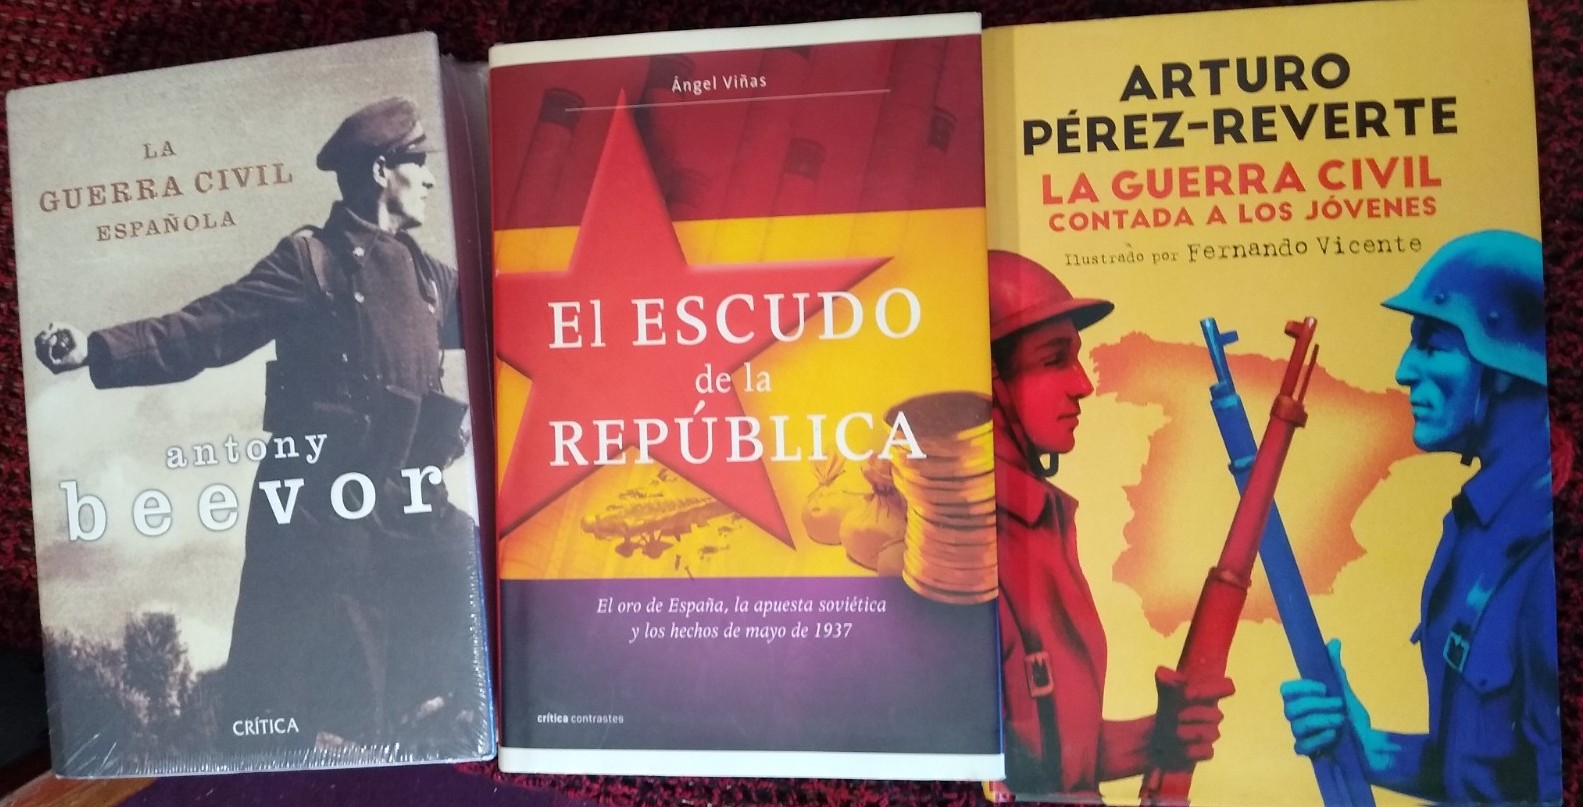 La guerra civil española - Antony Beevor